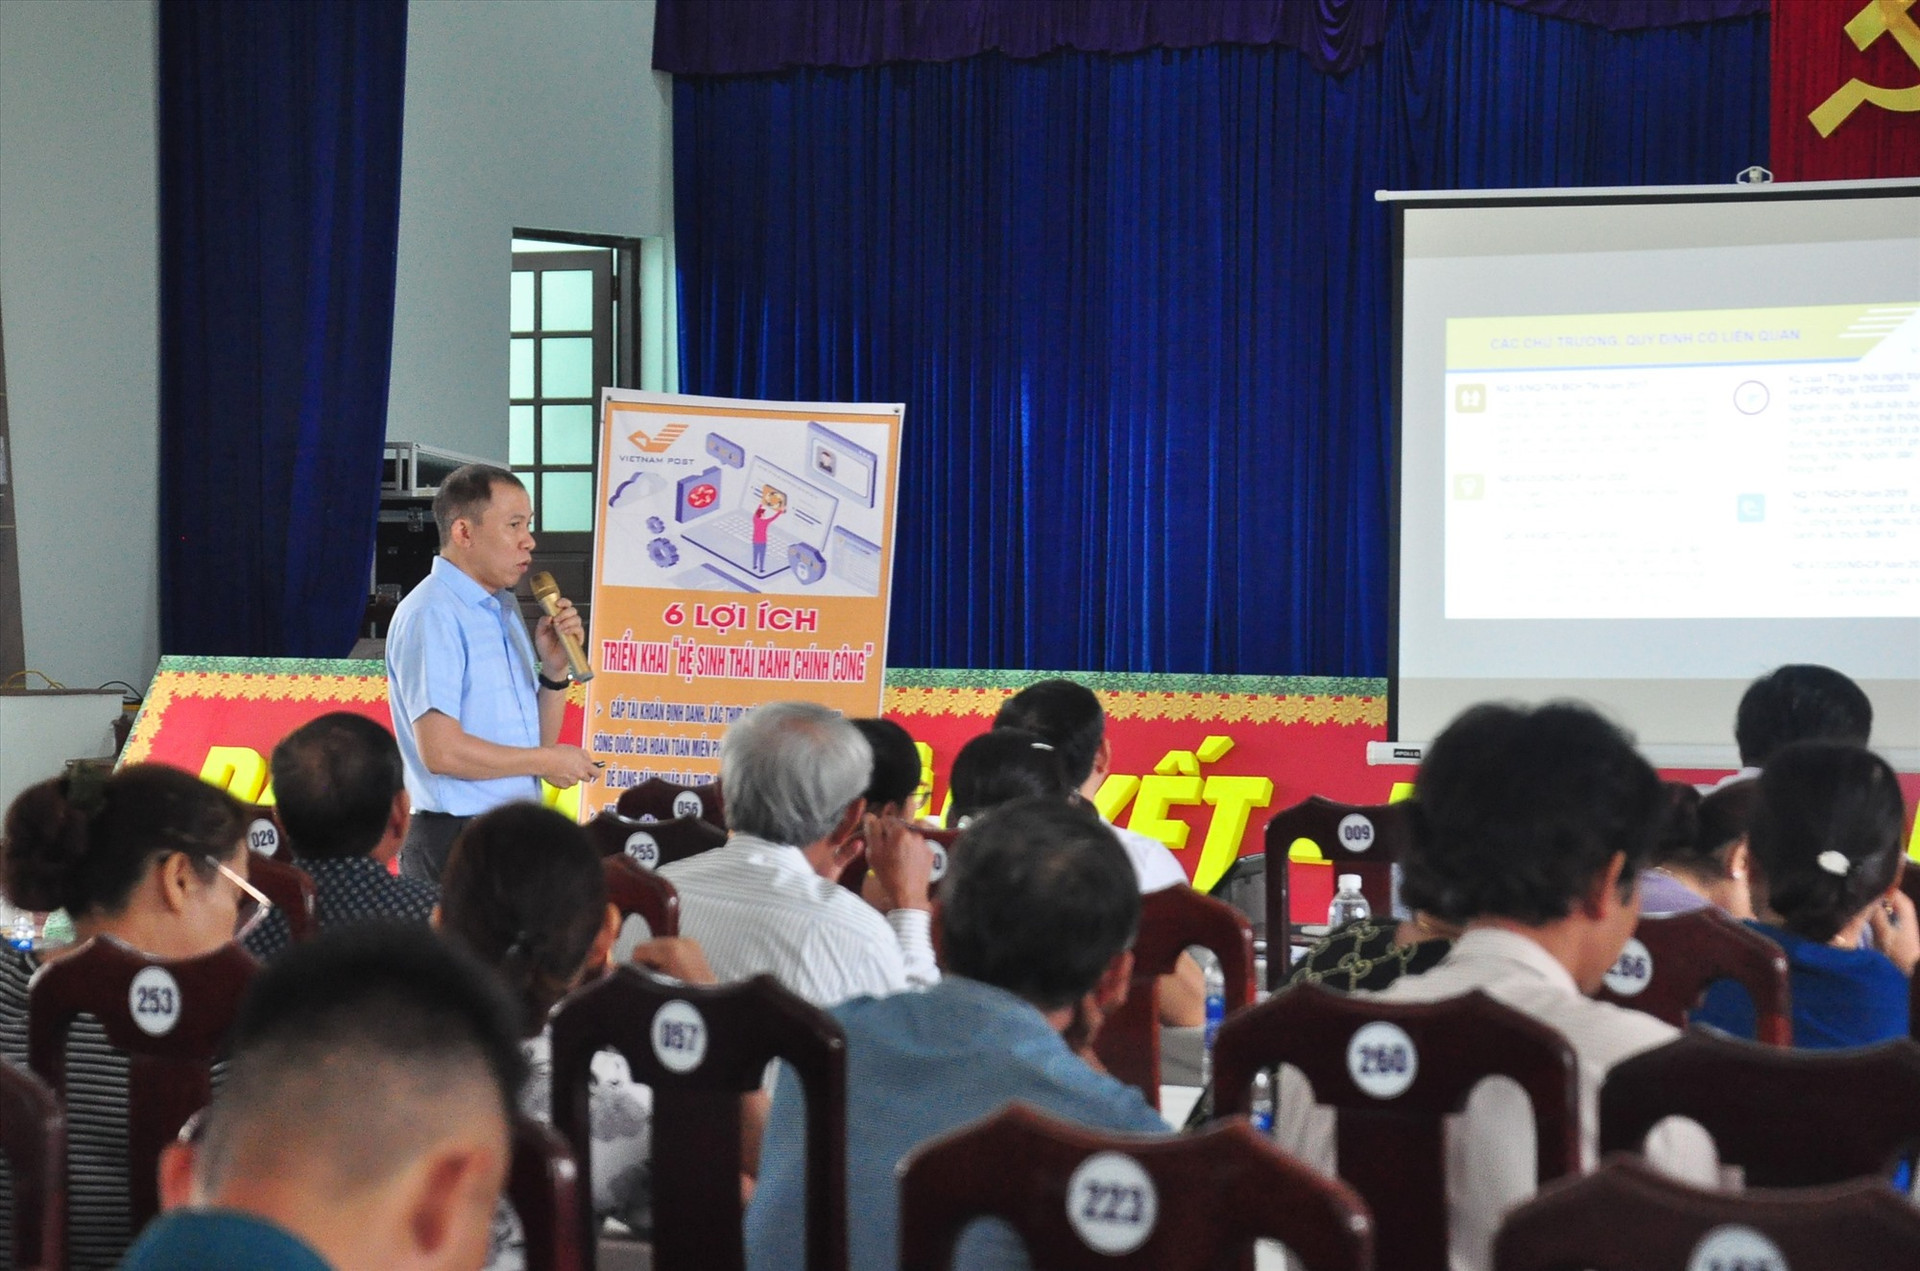 Cán bộ, người dân thị trấn Nam Phước được nhân viên bưu điện giới thiệu về “Hệ sinh thái hành chính công“. Ảnh: V.A